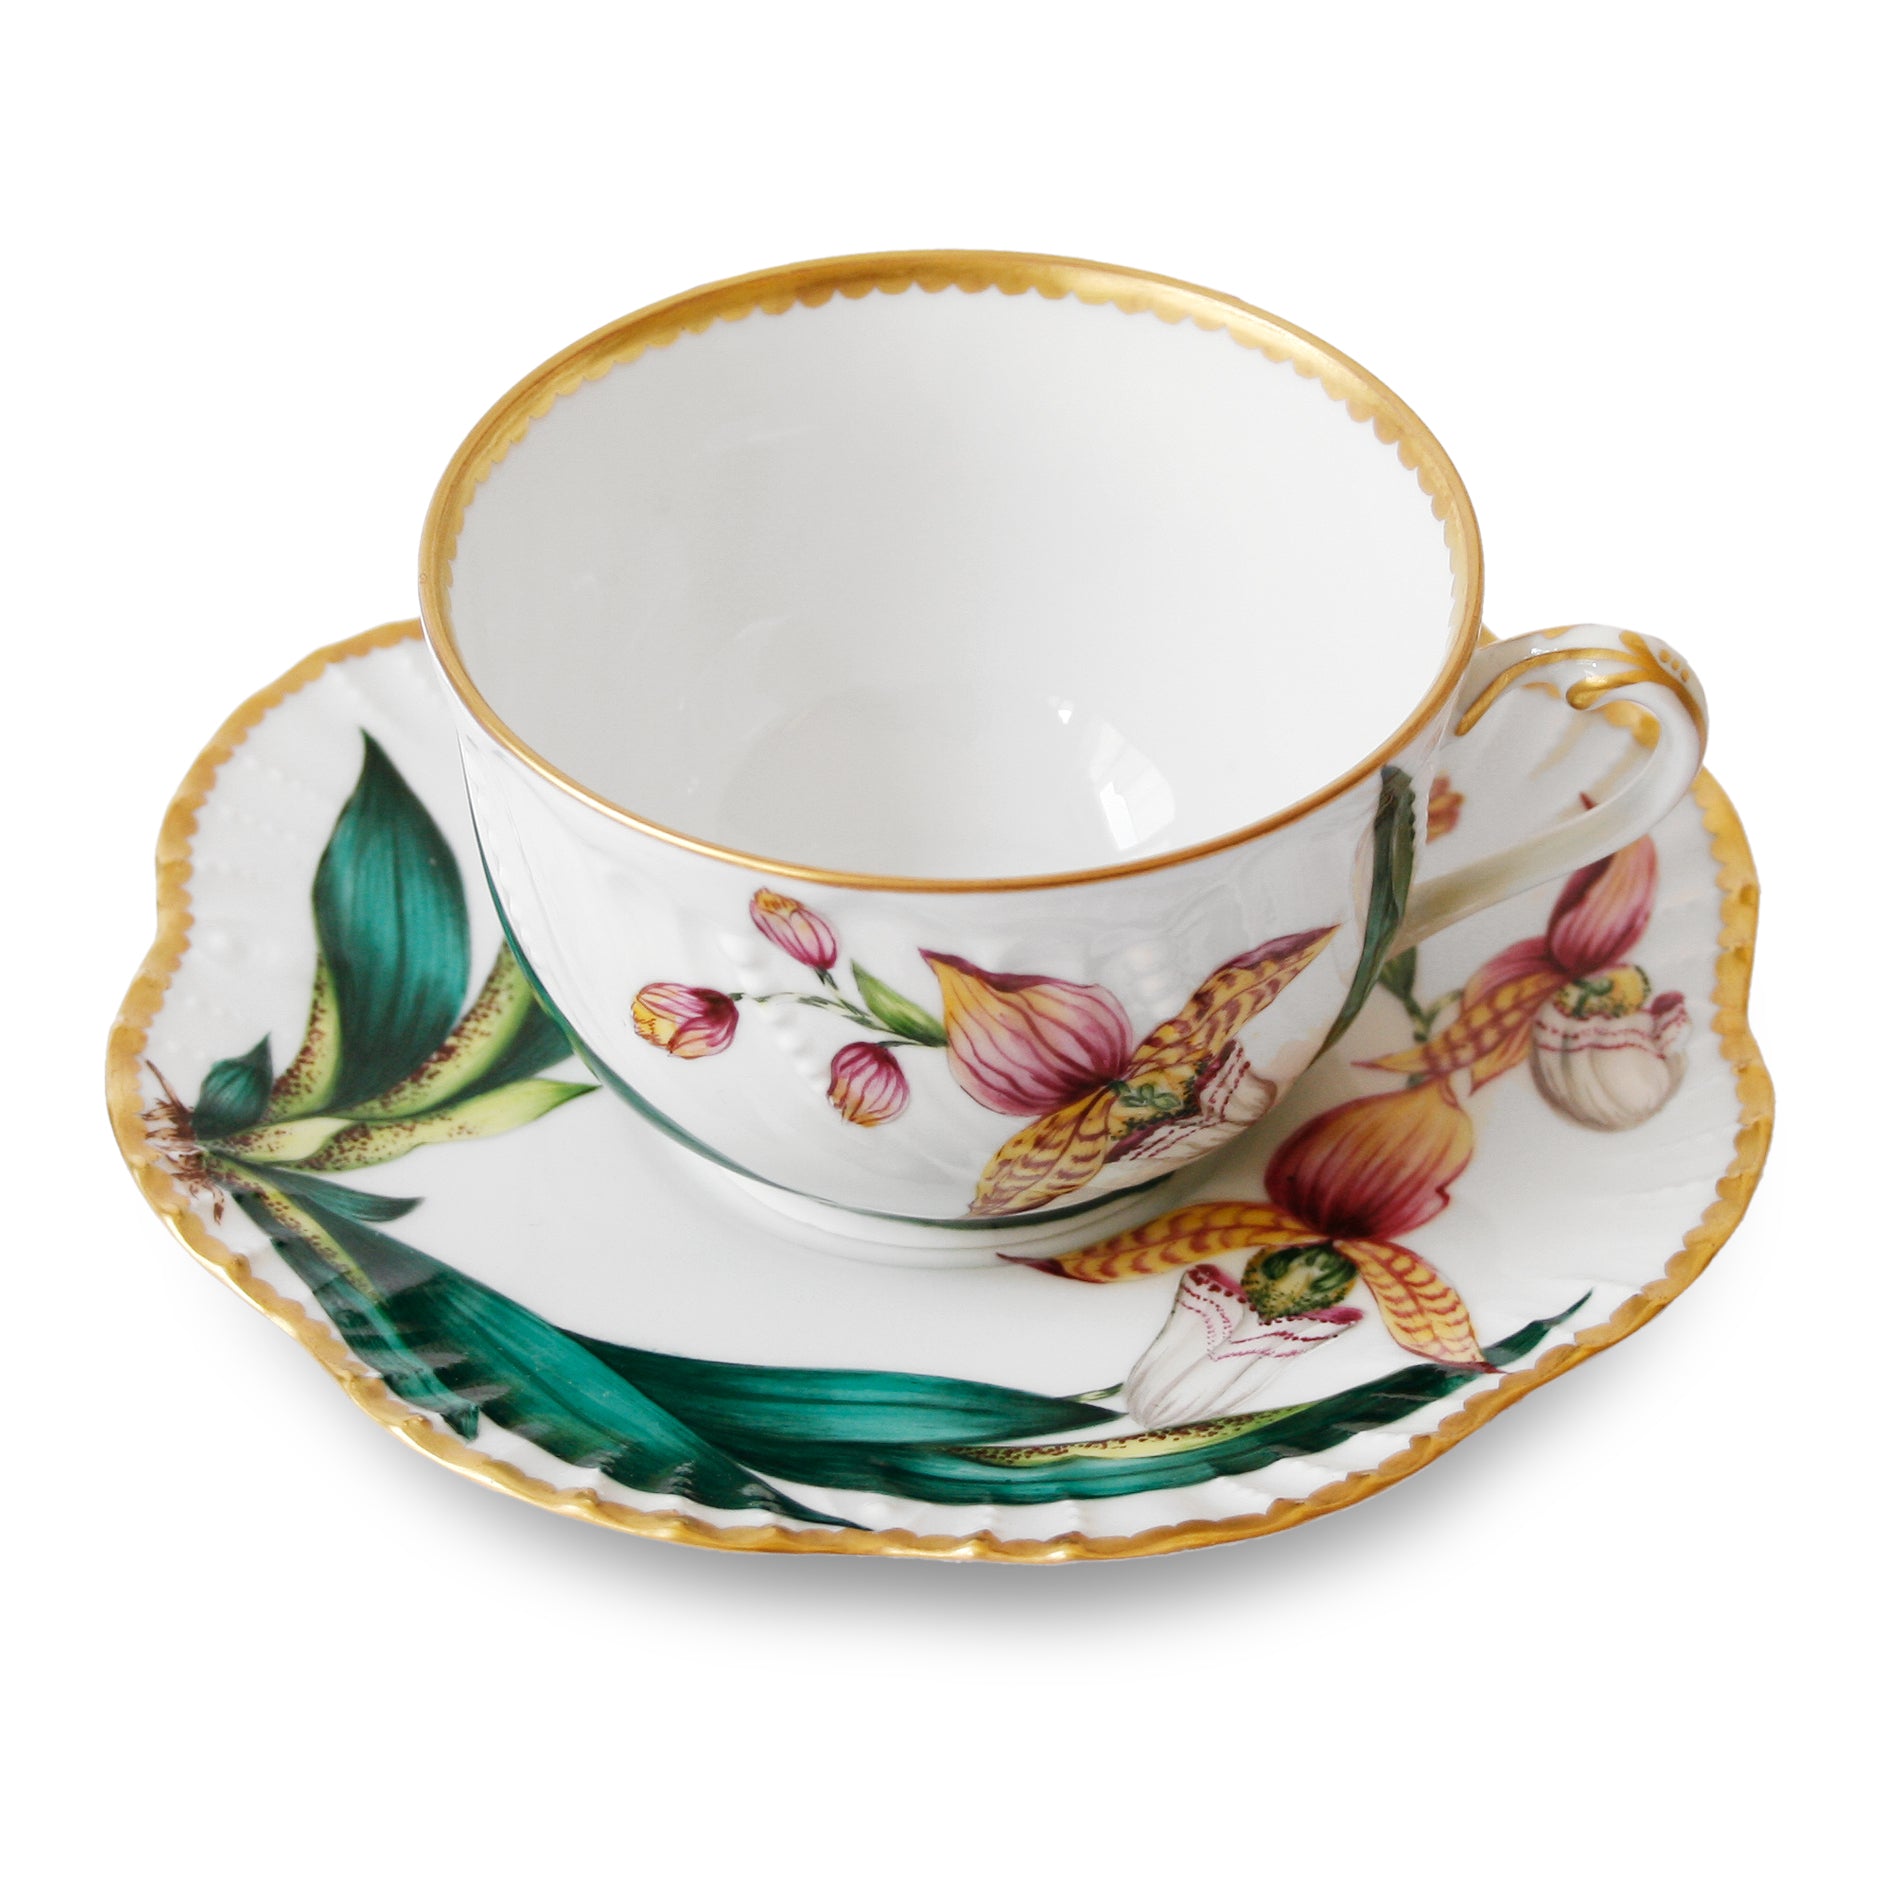 Histoires d'Orchidées - Tea cup and saucer
